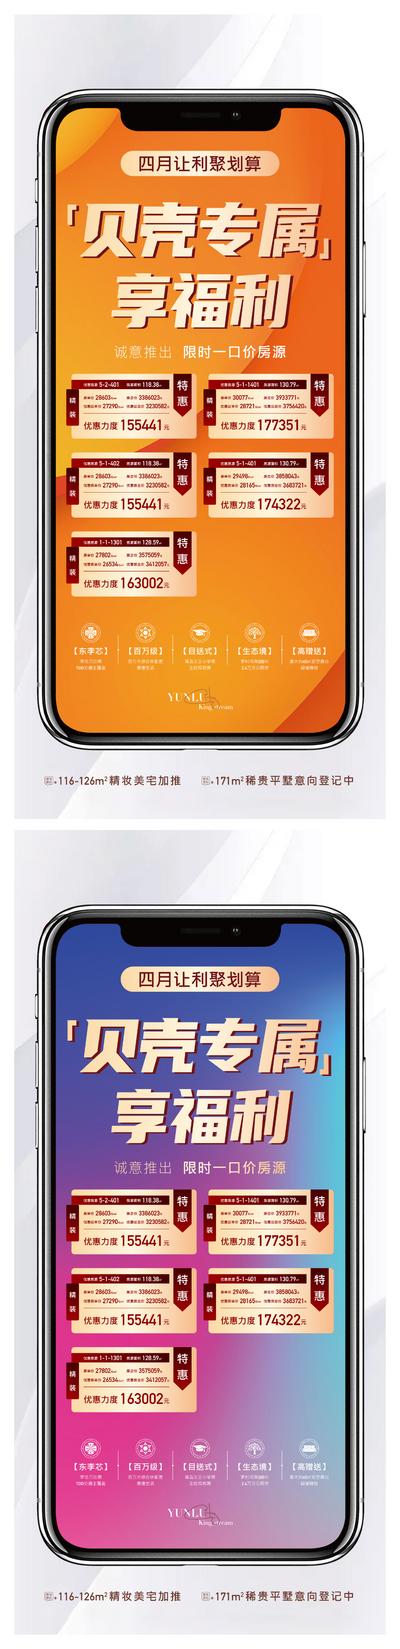 南门网 广告 海报 地产 特价房 app 手机 创意